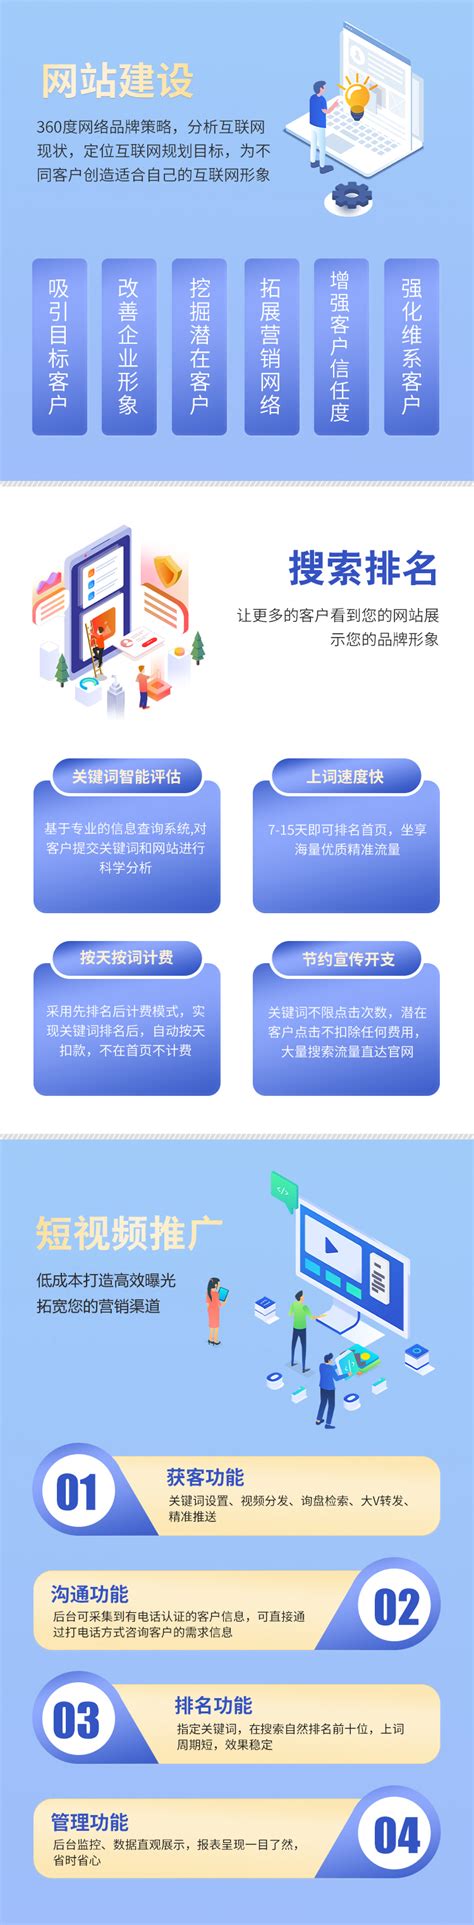 浙江网络小程序网站建设厂家电话